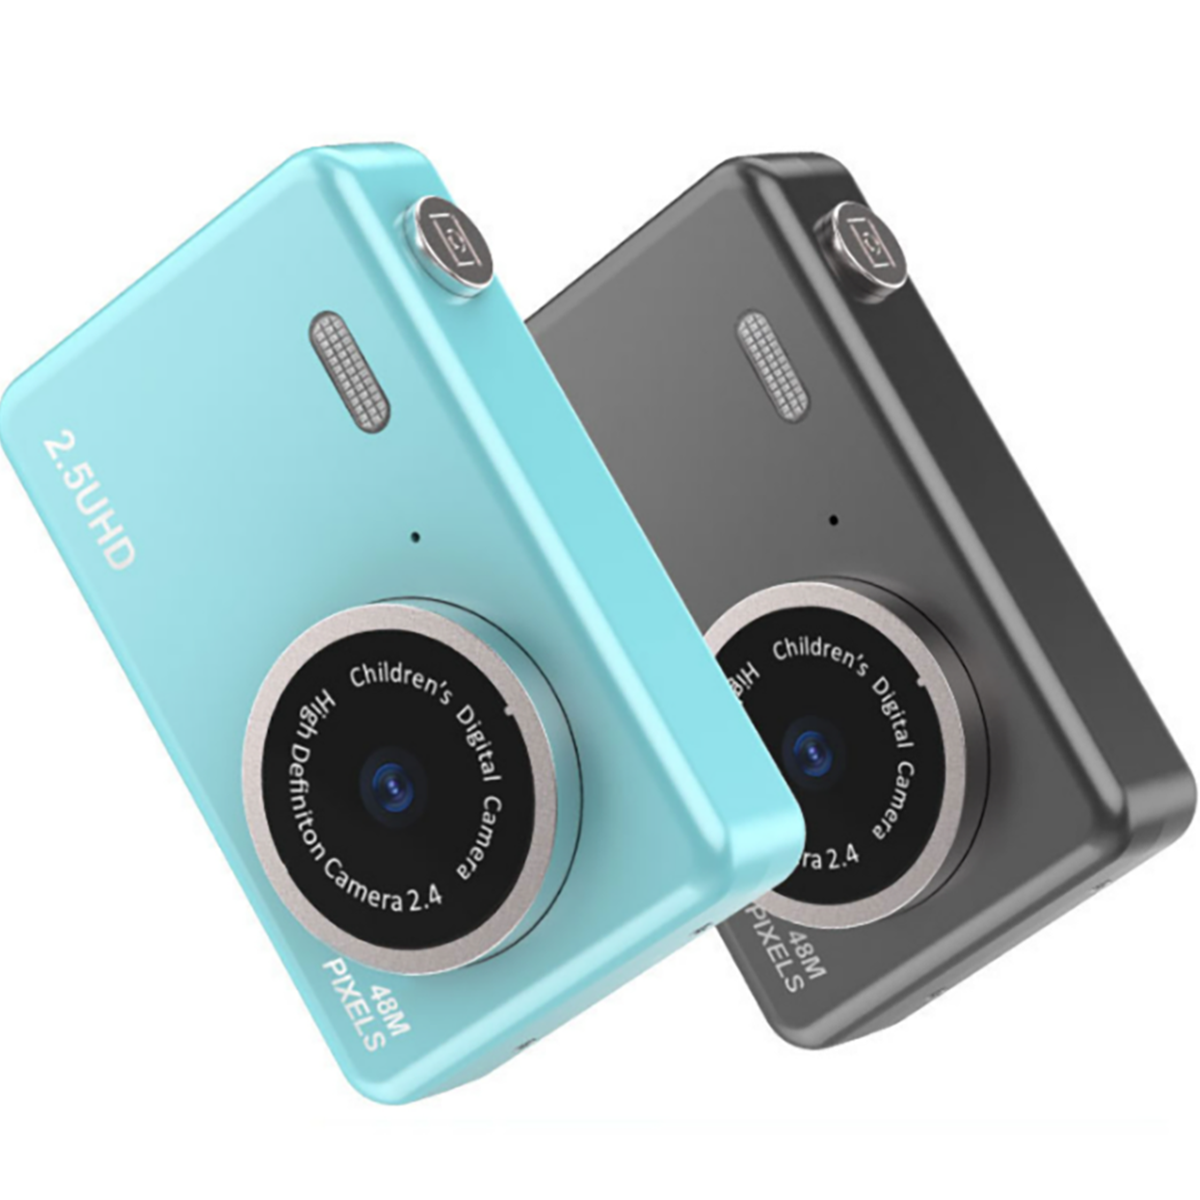 LCD- SYNTEK intelligente Front- Filter Duale Rückkameras, Studenten-Digitalkamera und Digitalkamera - blau,